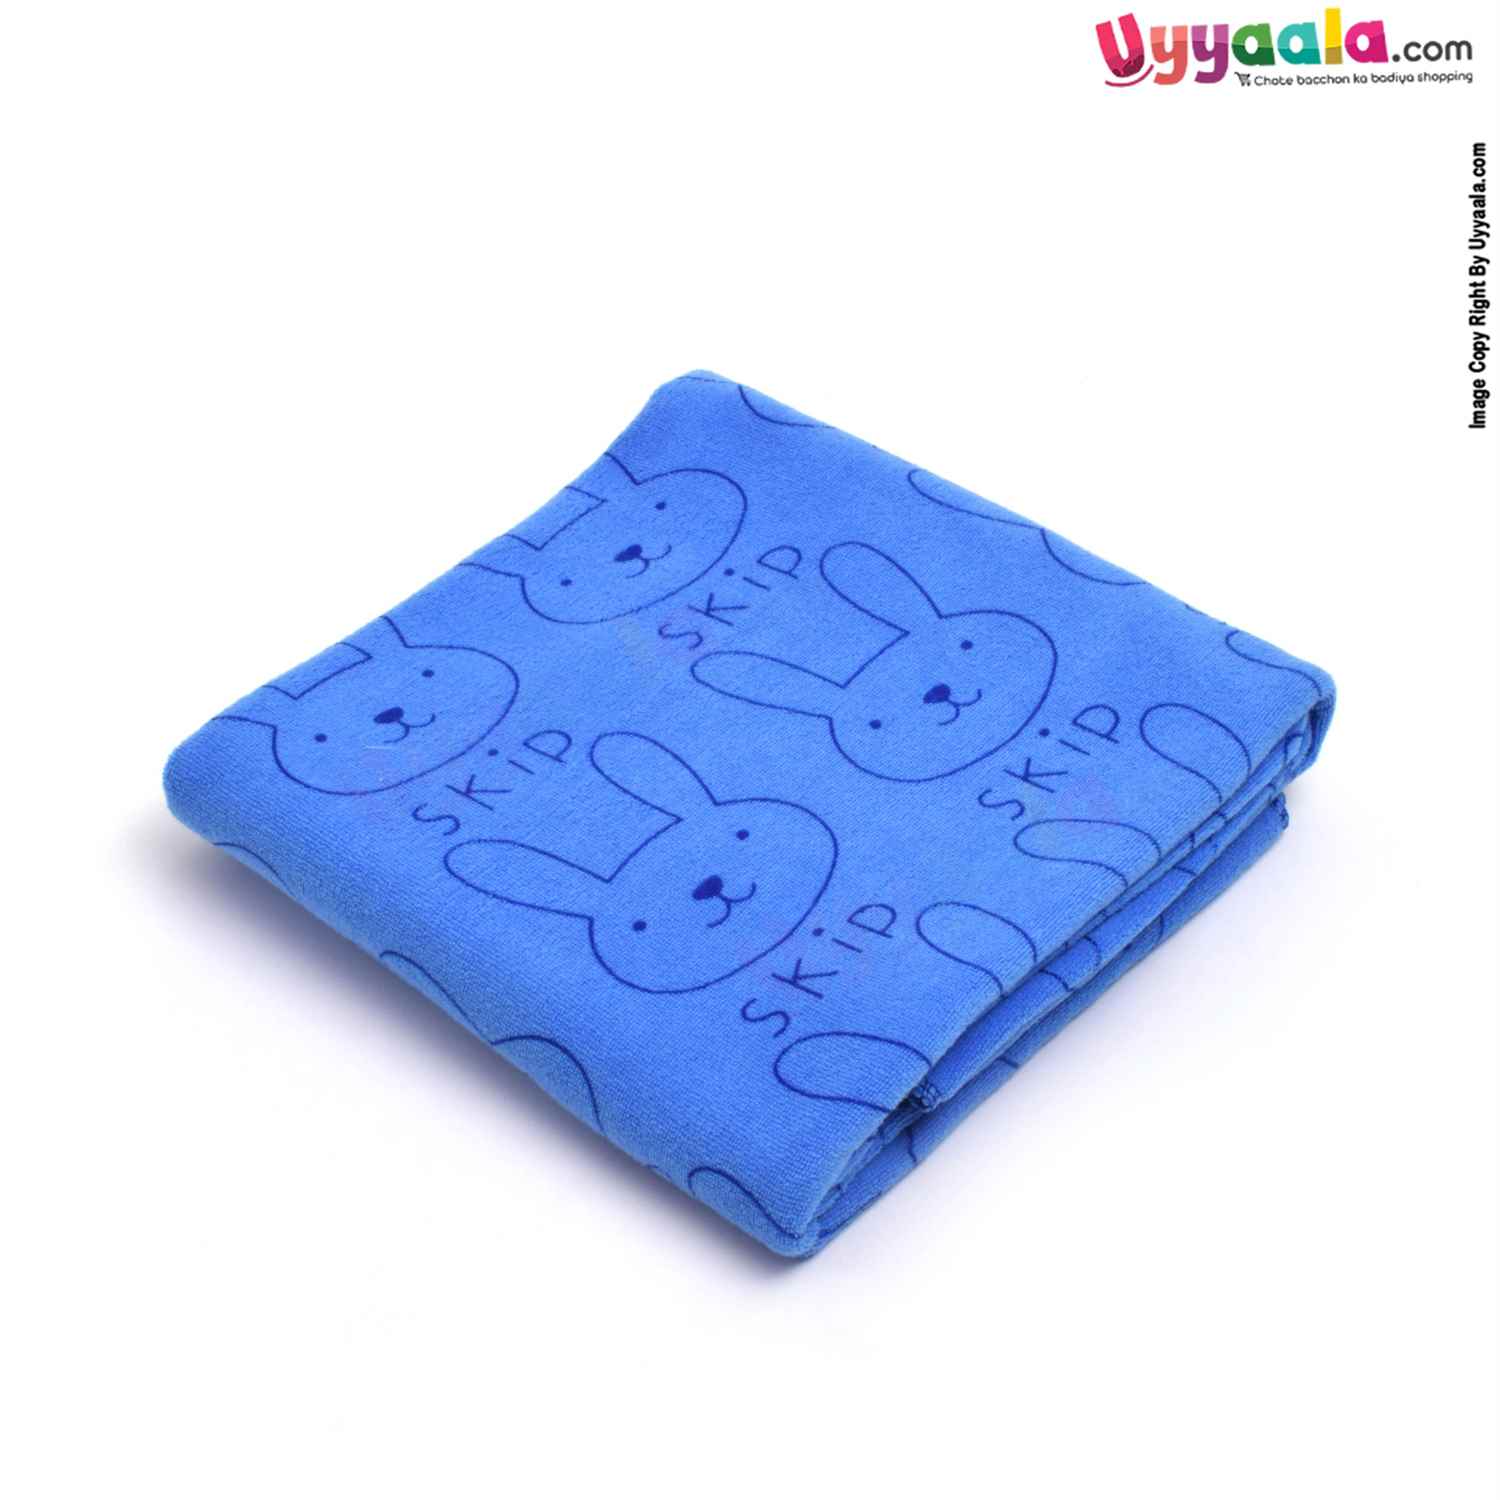 Soft Terry Bath Towel Premium with Rabbit Print for Babies 0-36m Age, Size (143*75cm)- Blue